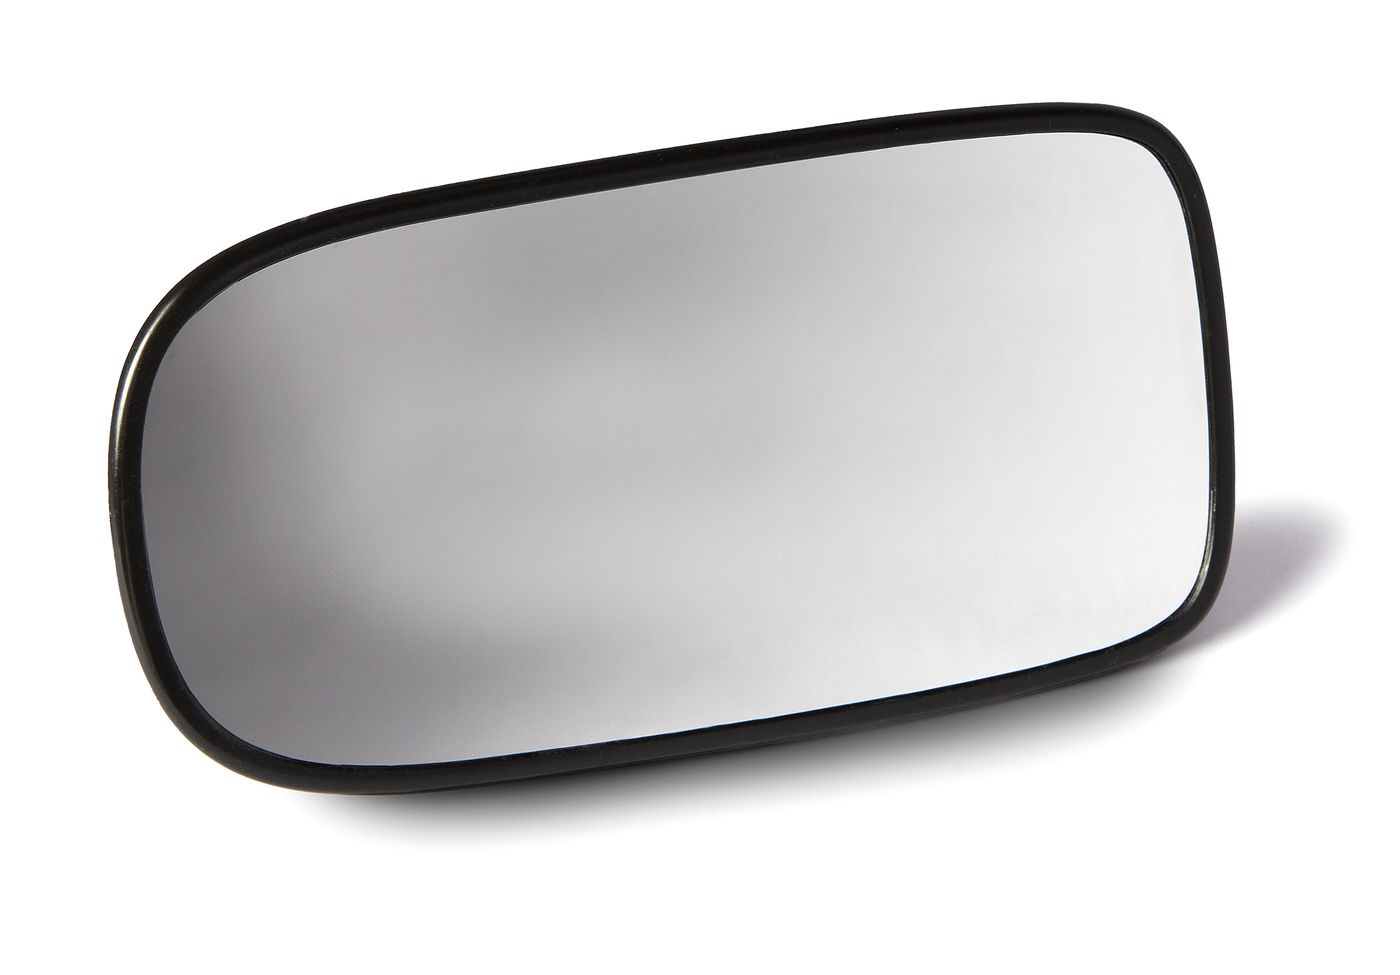 Spiegelglas
Mirror glass
Verre de rétroviseur
Espejo retrovisor